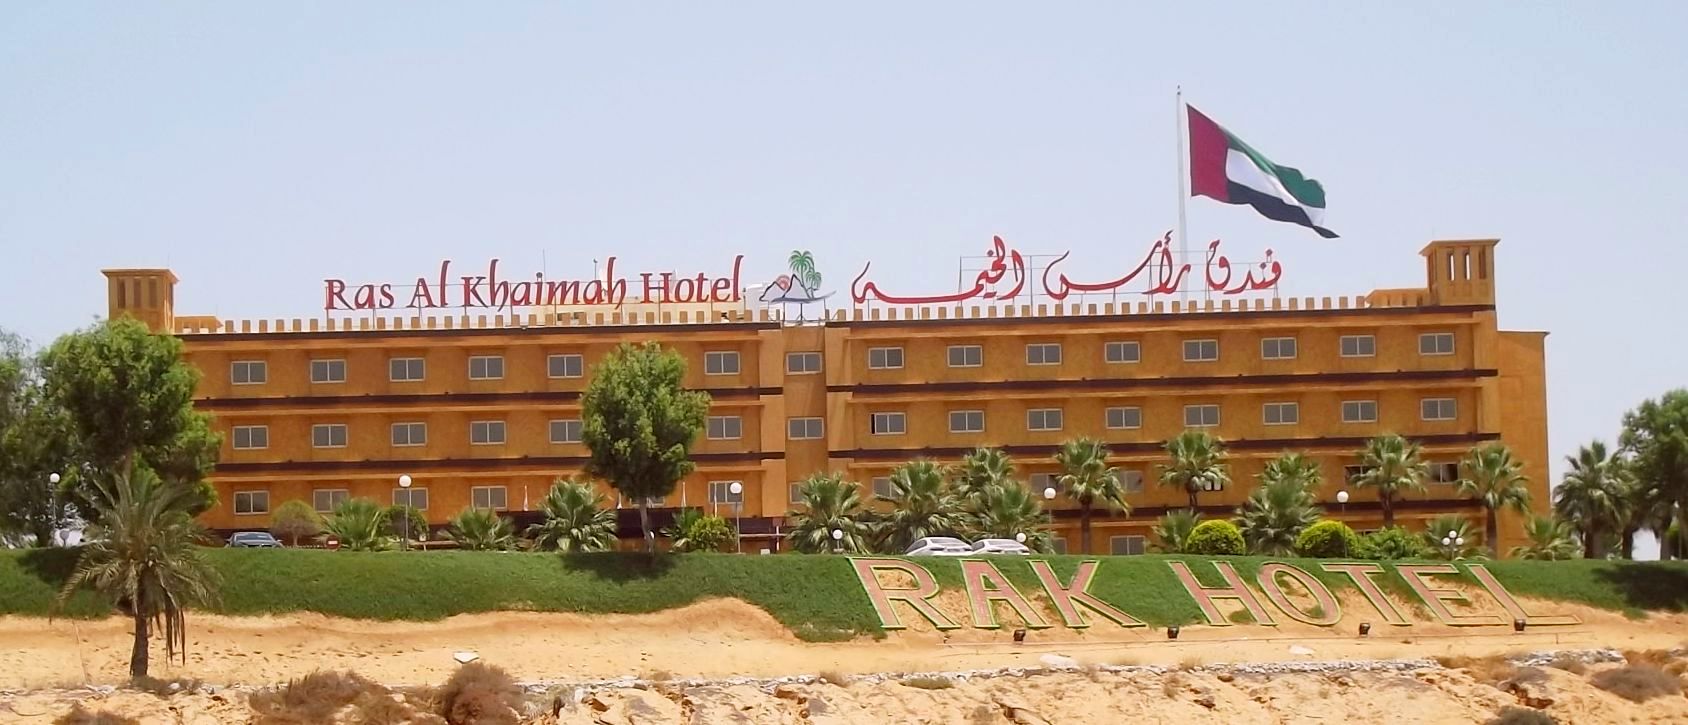 Ras al Khaimah Hotel